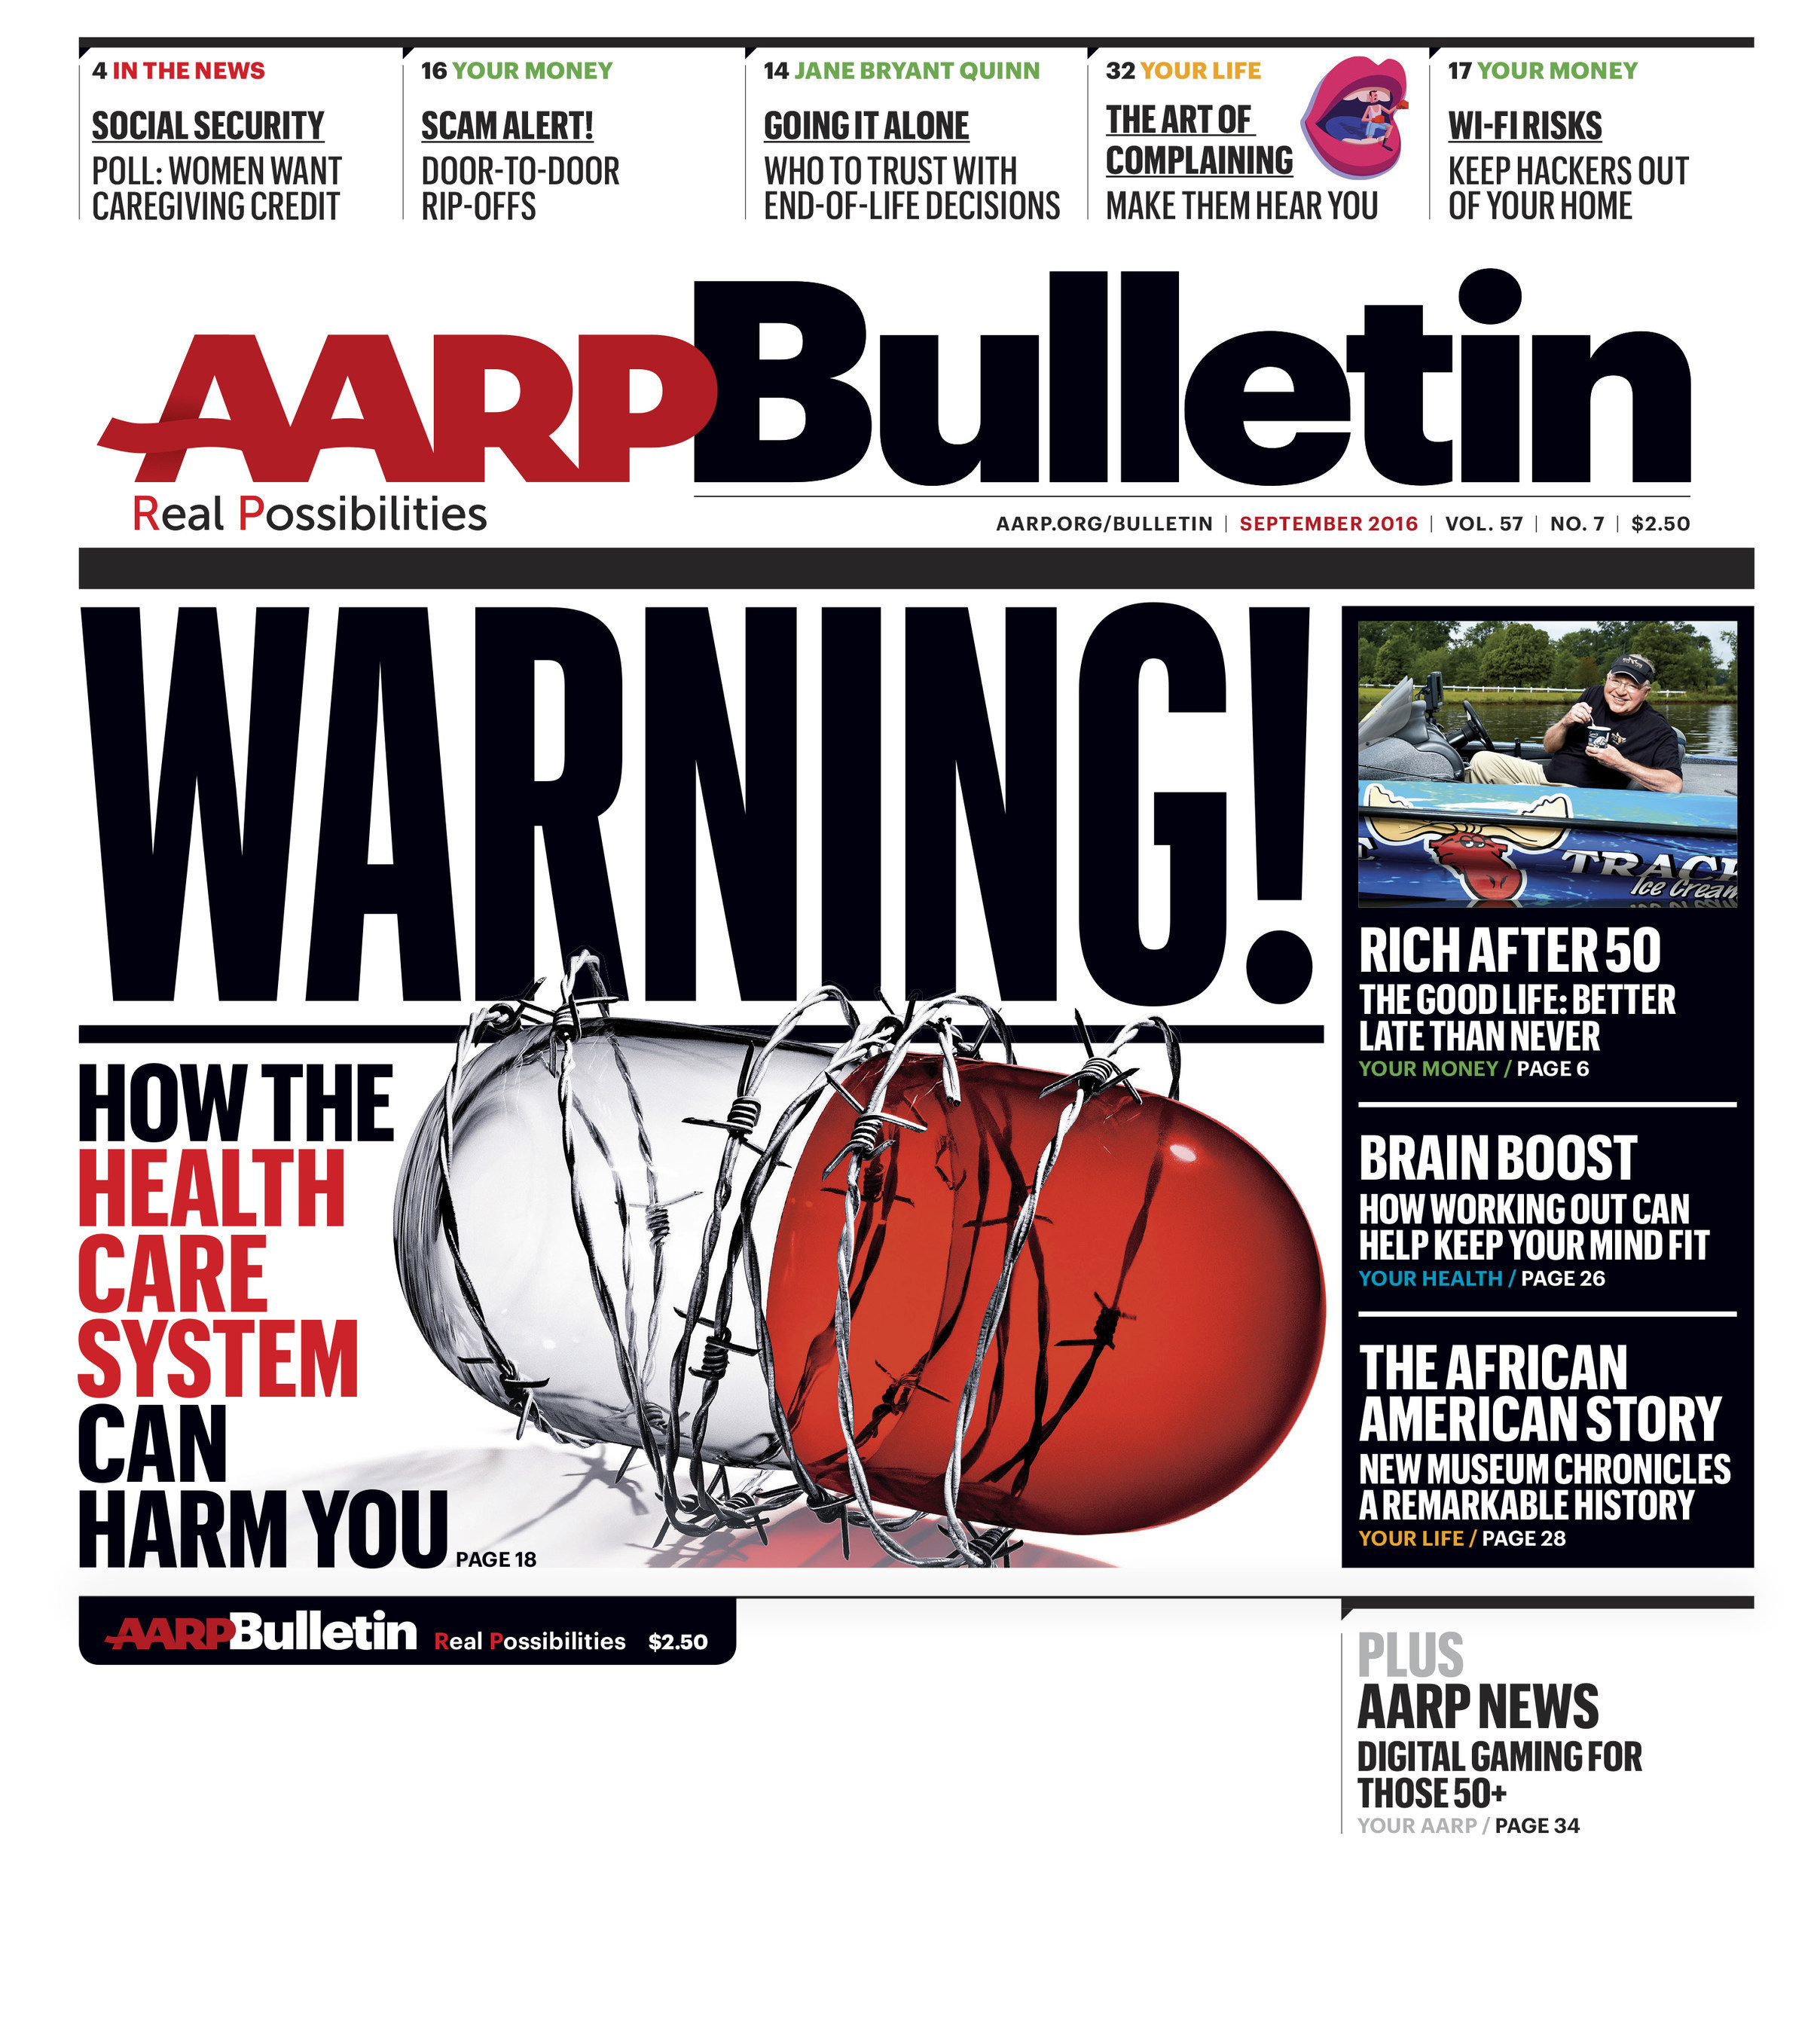 AARP Bulletin Cover - September 2016 Issue